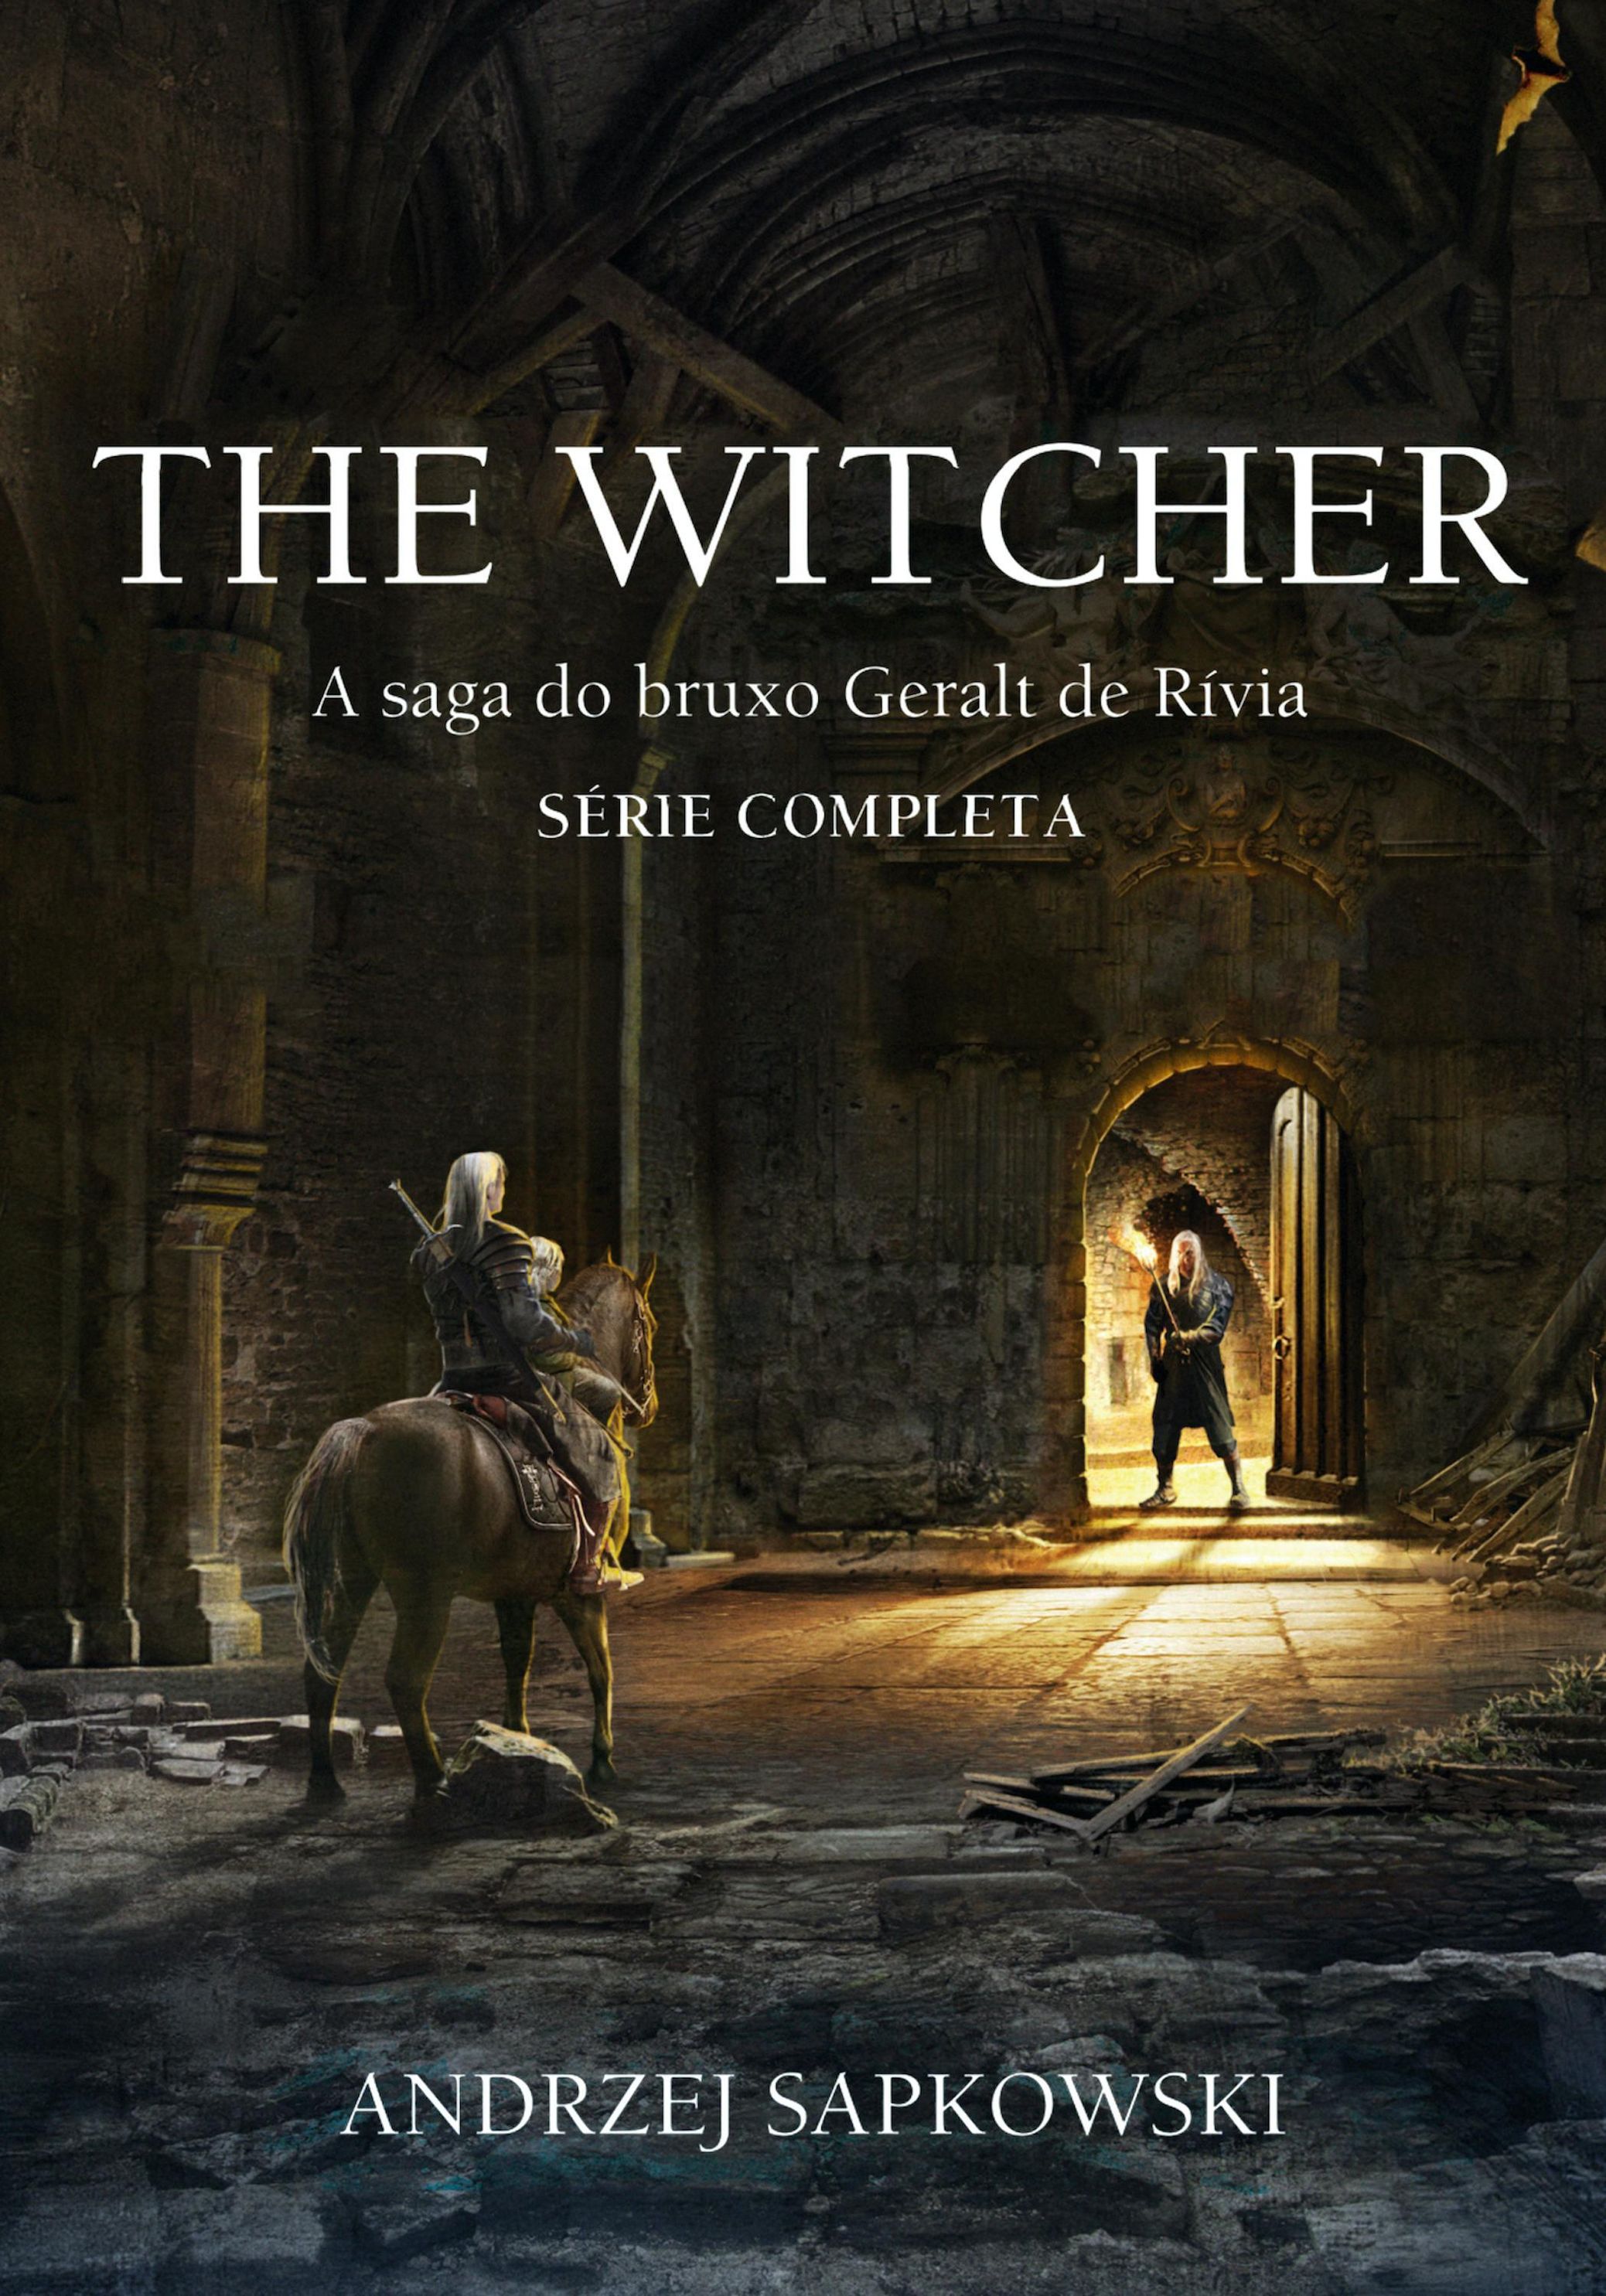 The Witcher - Box digital eBook v. Andrzej Sapkowski | Weltbild